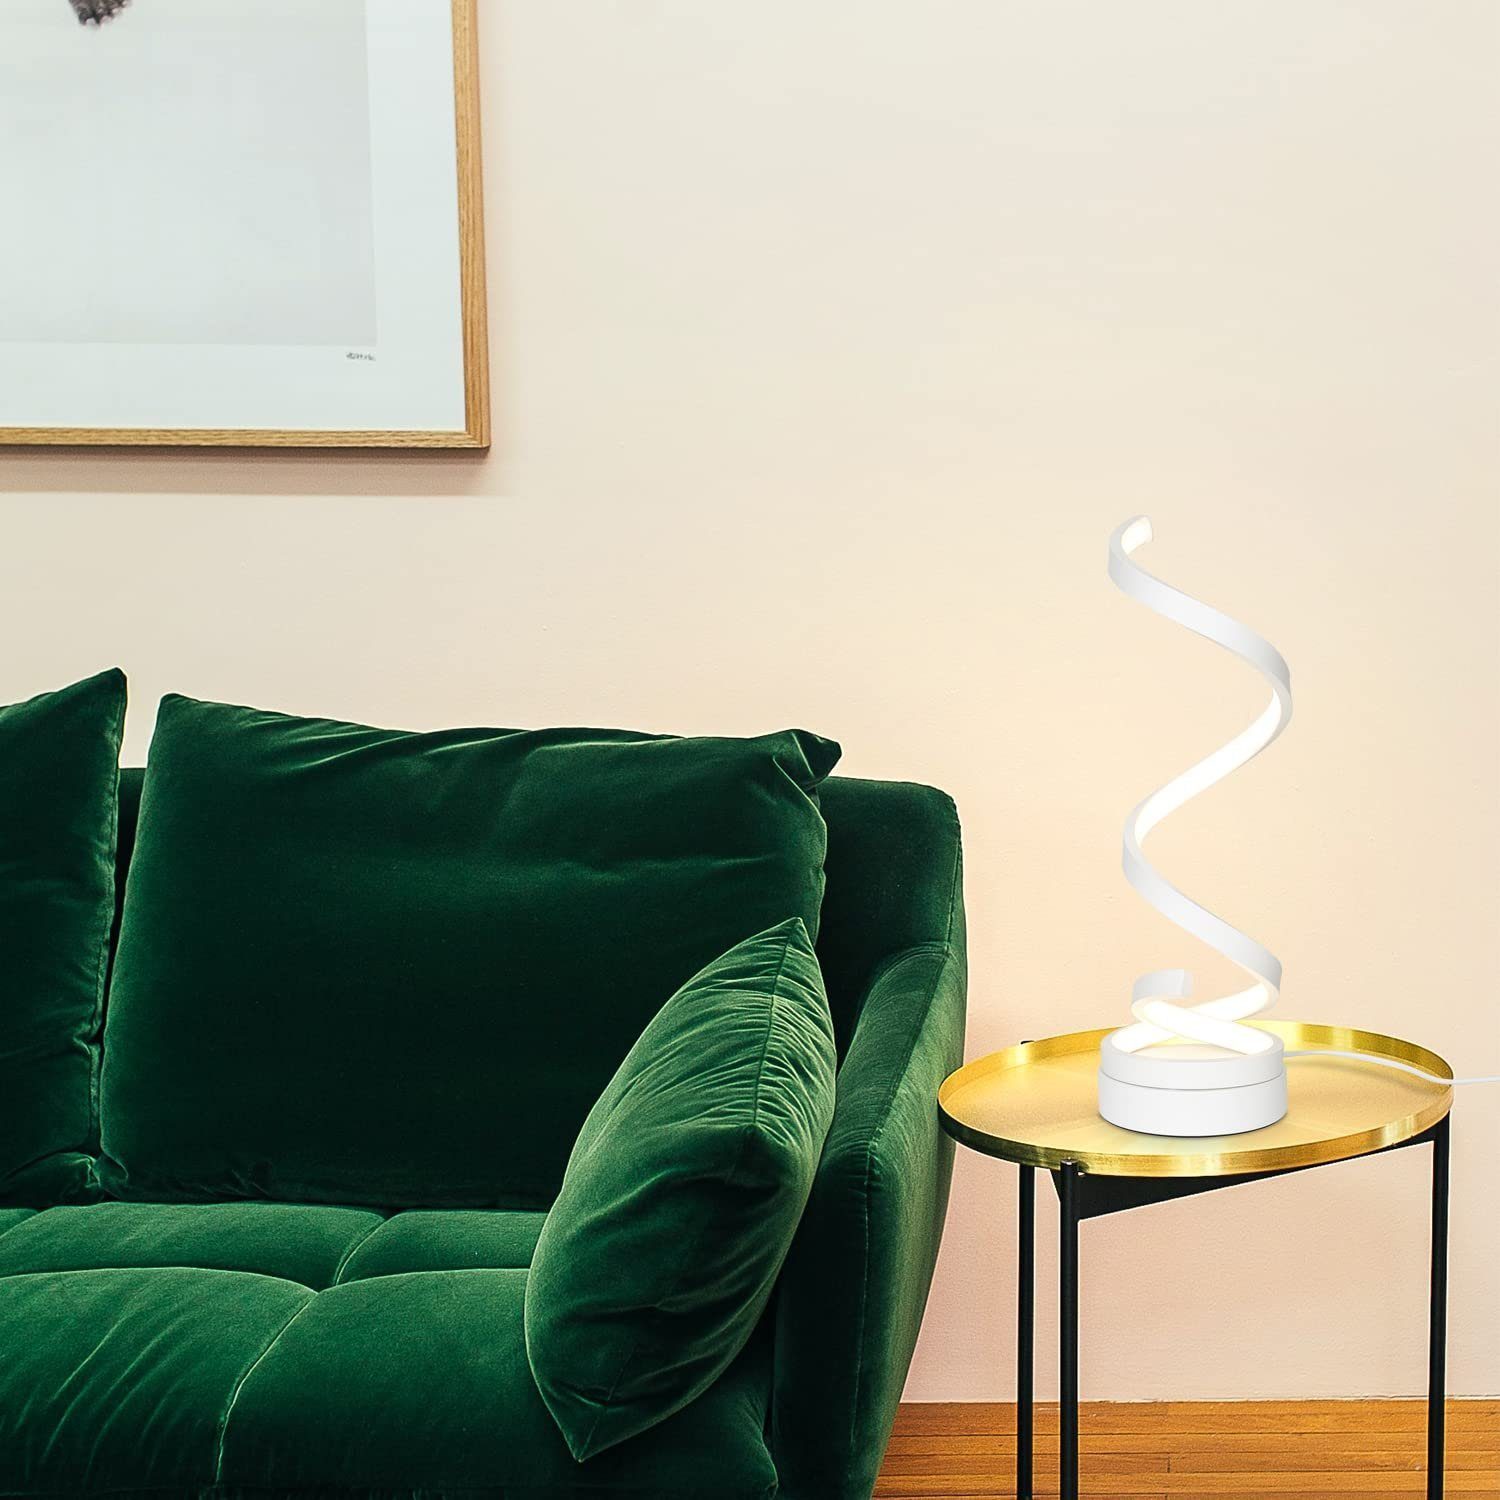 Dimmbare 12W LED Spiralförmig, Nachttischlampe fest LED Berührungsschalter, ZMH warmweiß-kaltweiß, integriert, Modern Tischleuchte Weiß Wohnzimmer